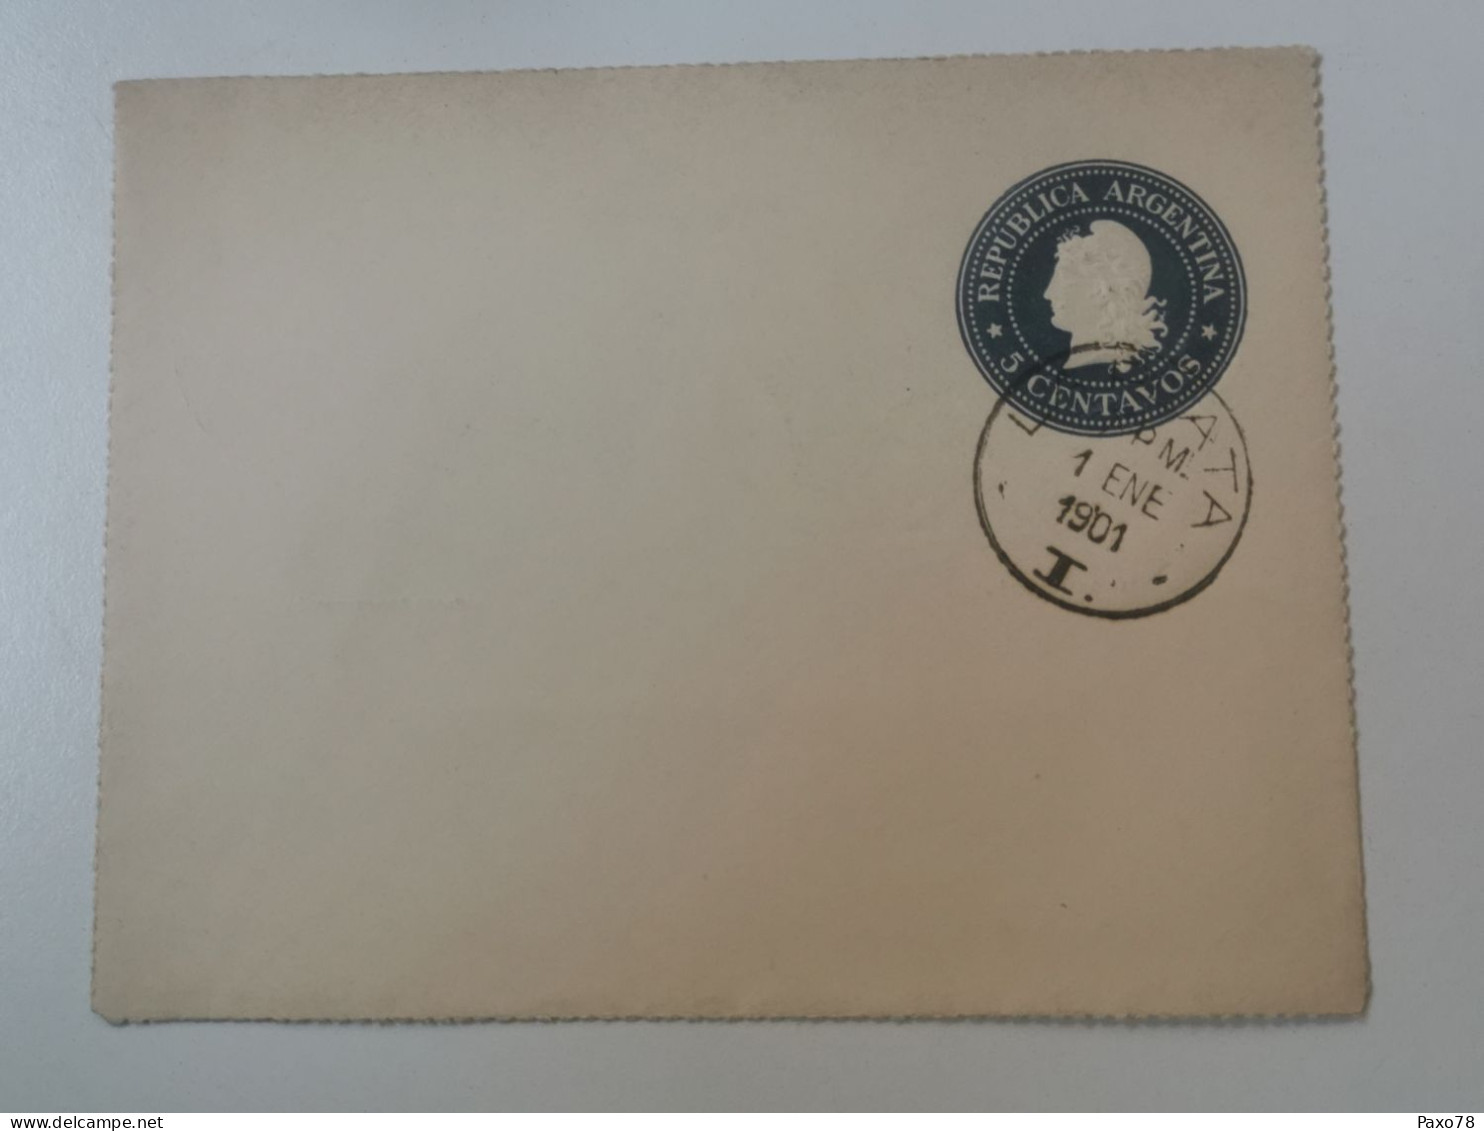 Feliz Ano Nuevo 1901, 5 Centavos Oblitéré - Postal Stationery